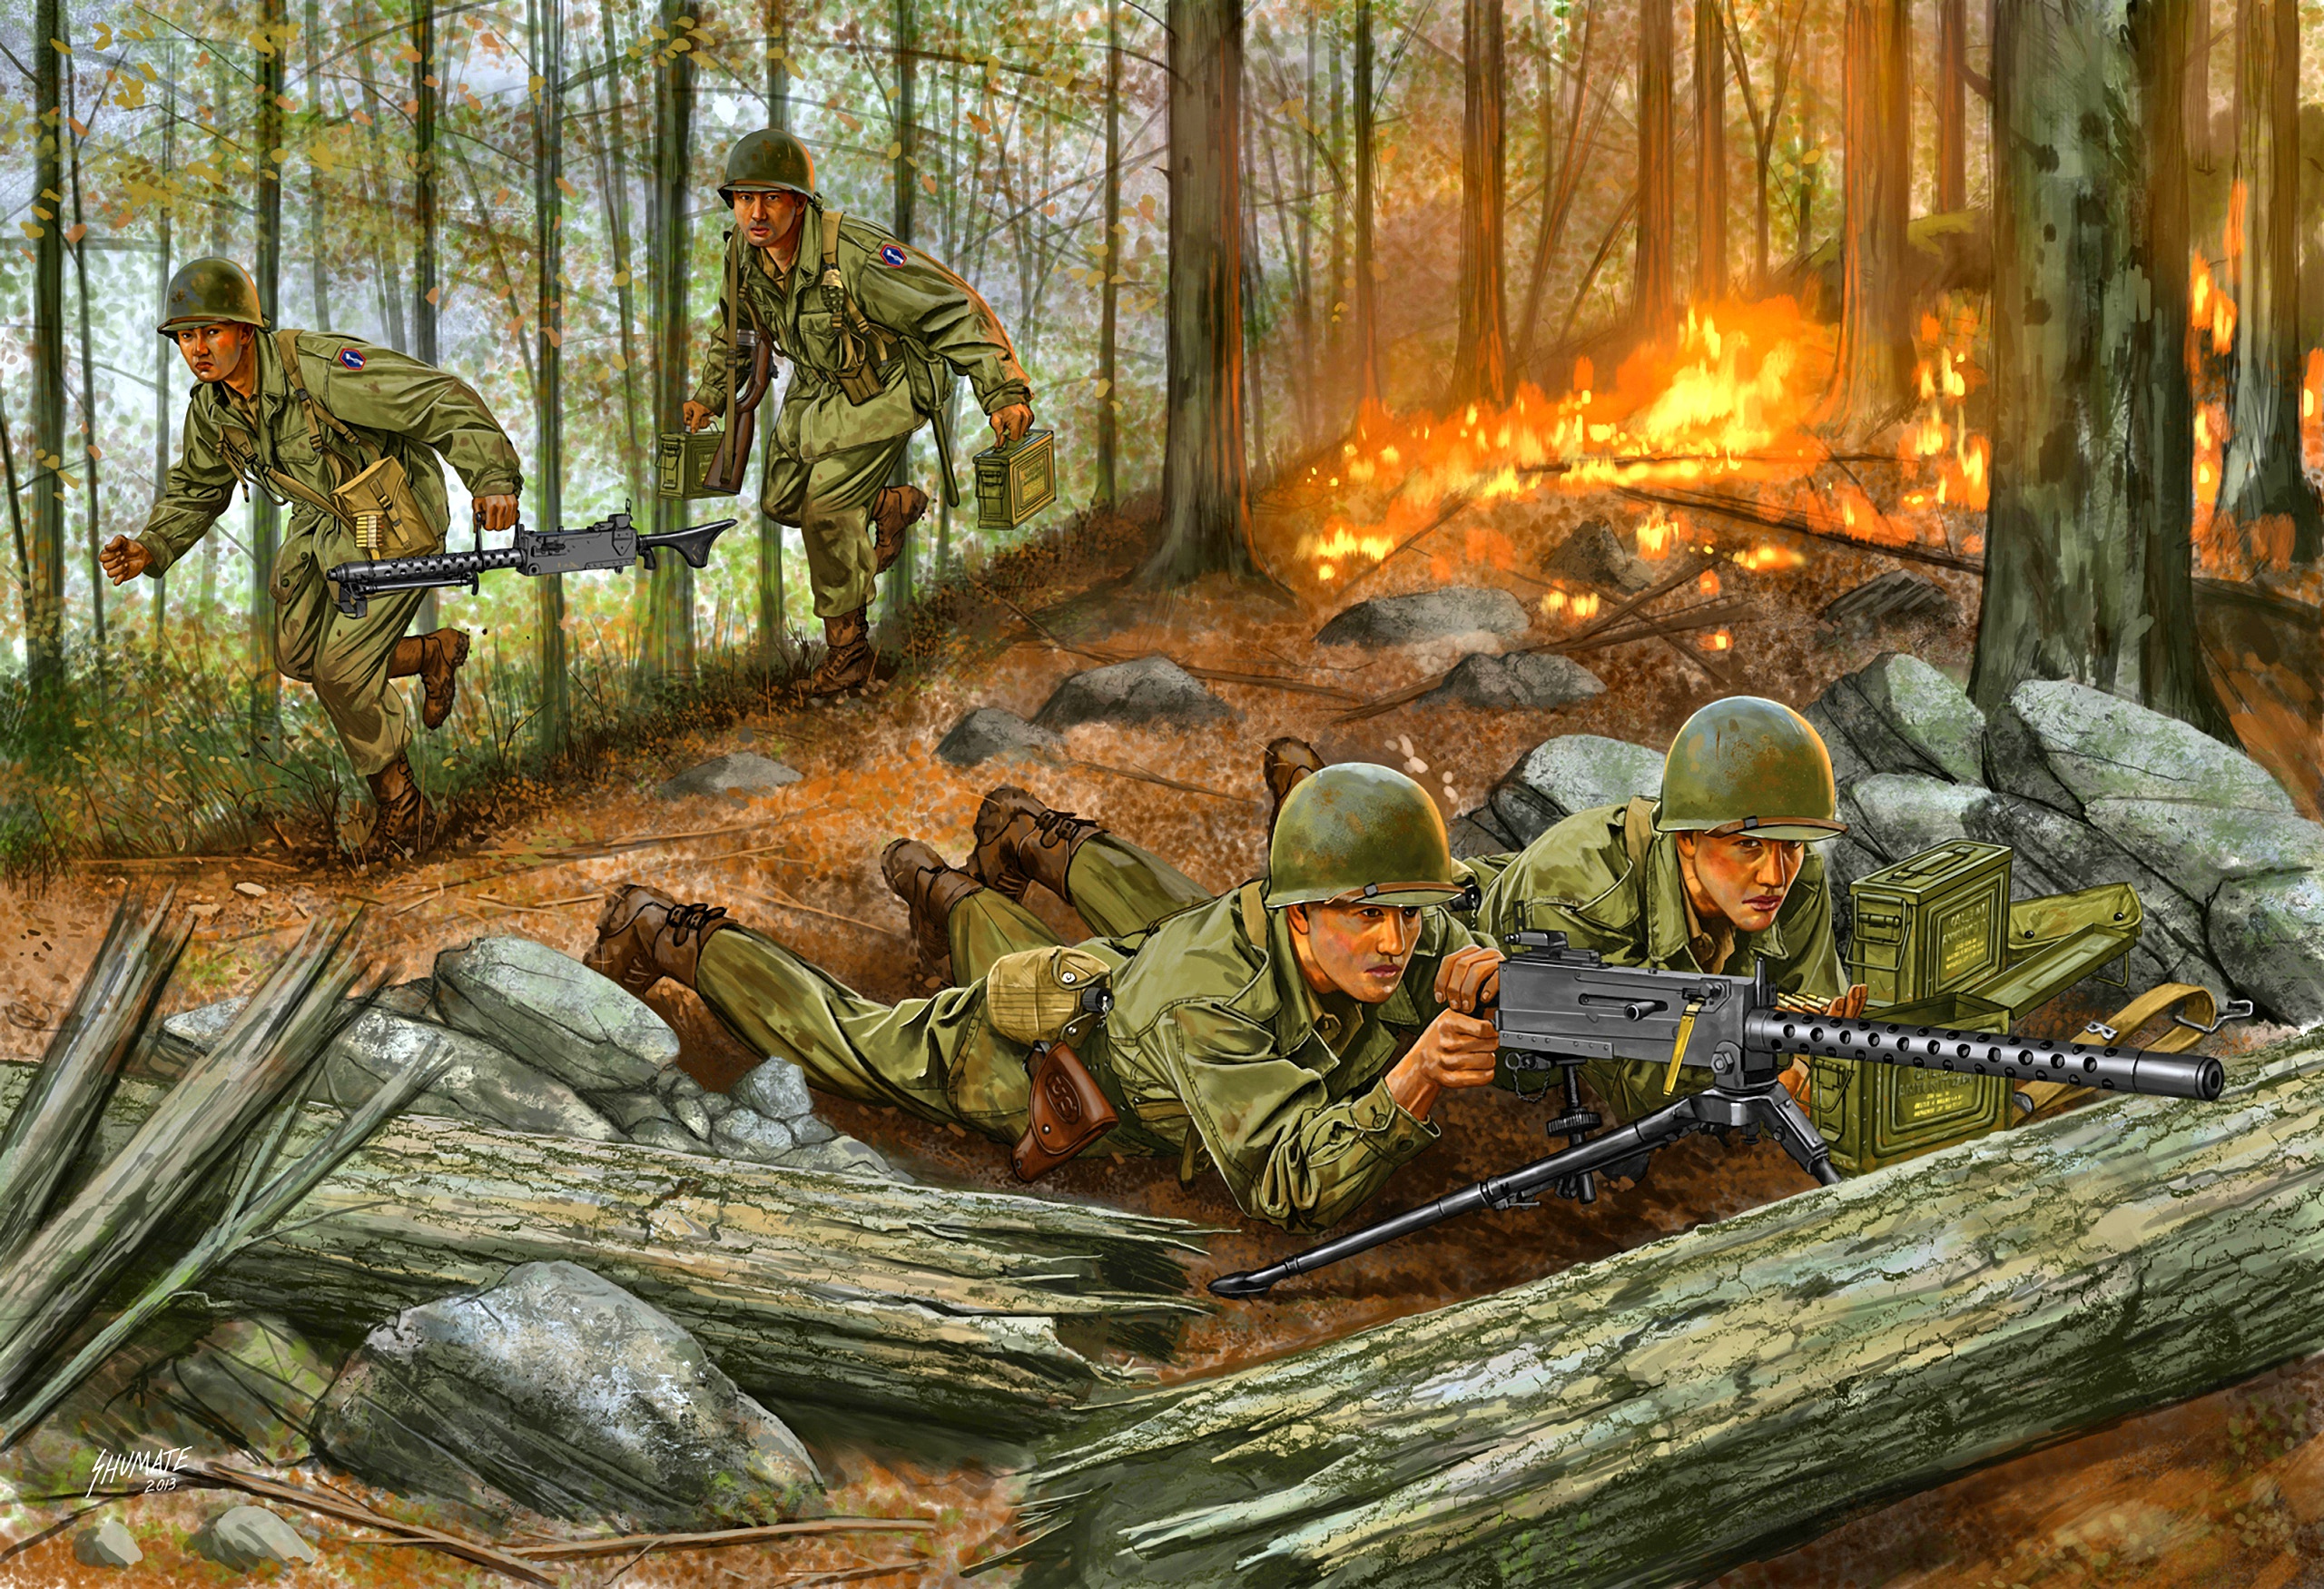 Сюжет великой войне. Картины Johnny Shumate солдаты. Стюарт Браун солдаты в бою живопись. Ww2 пулеметы США.